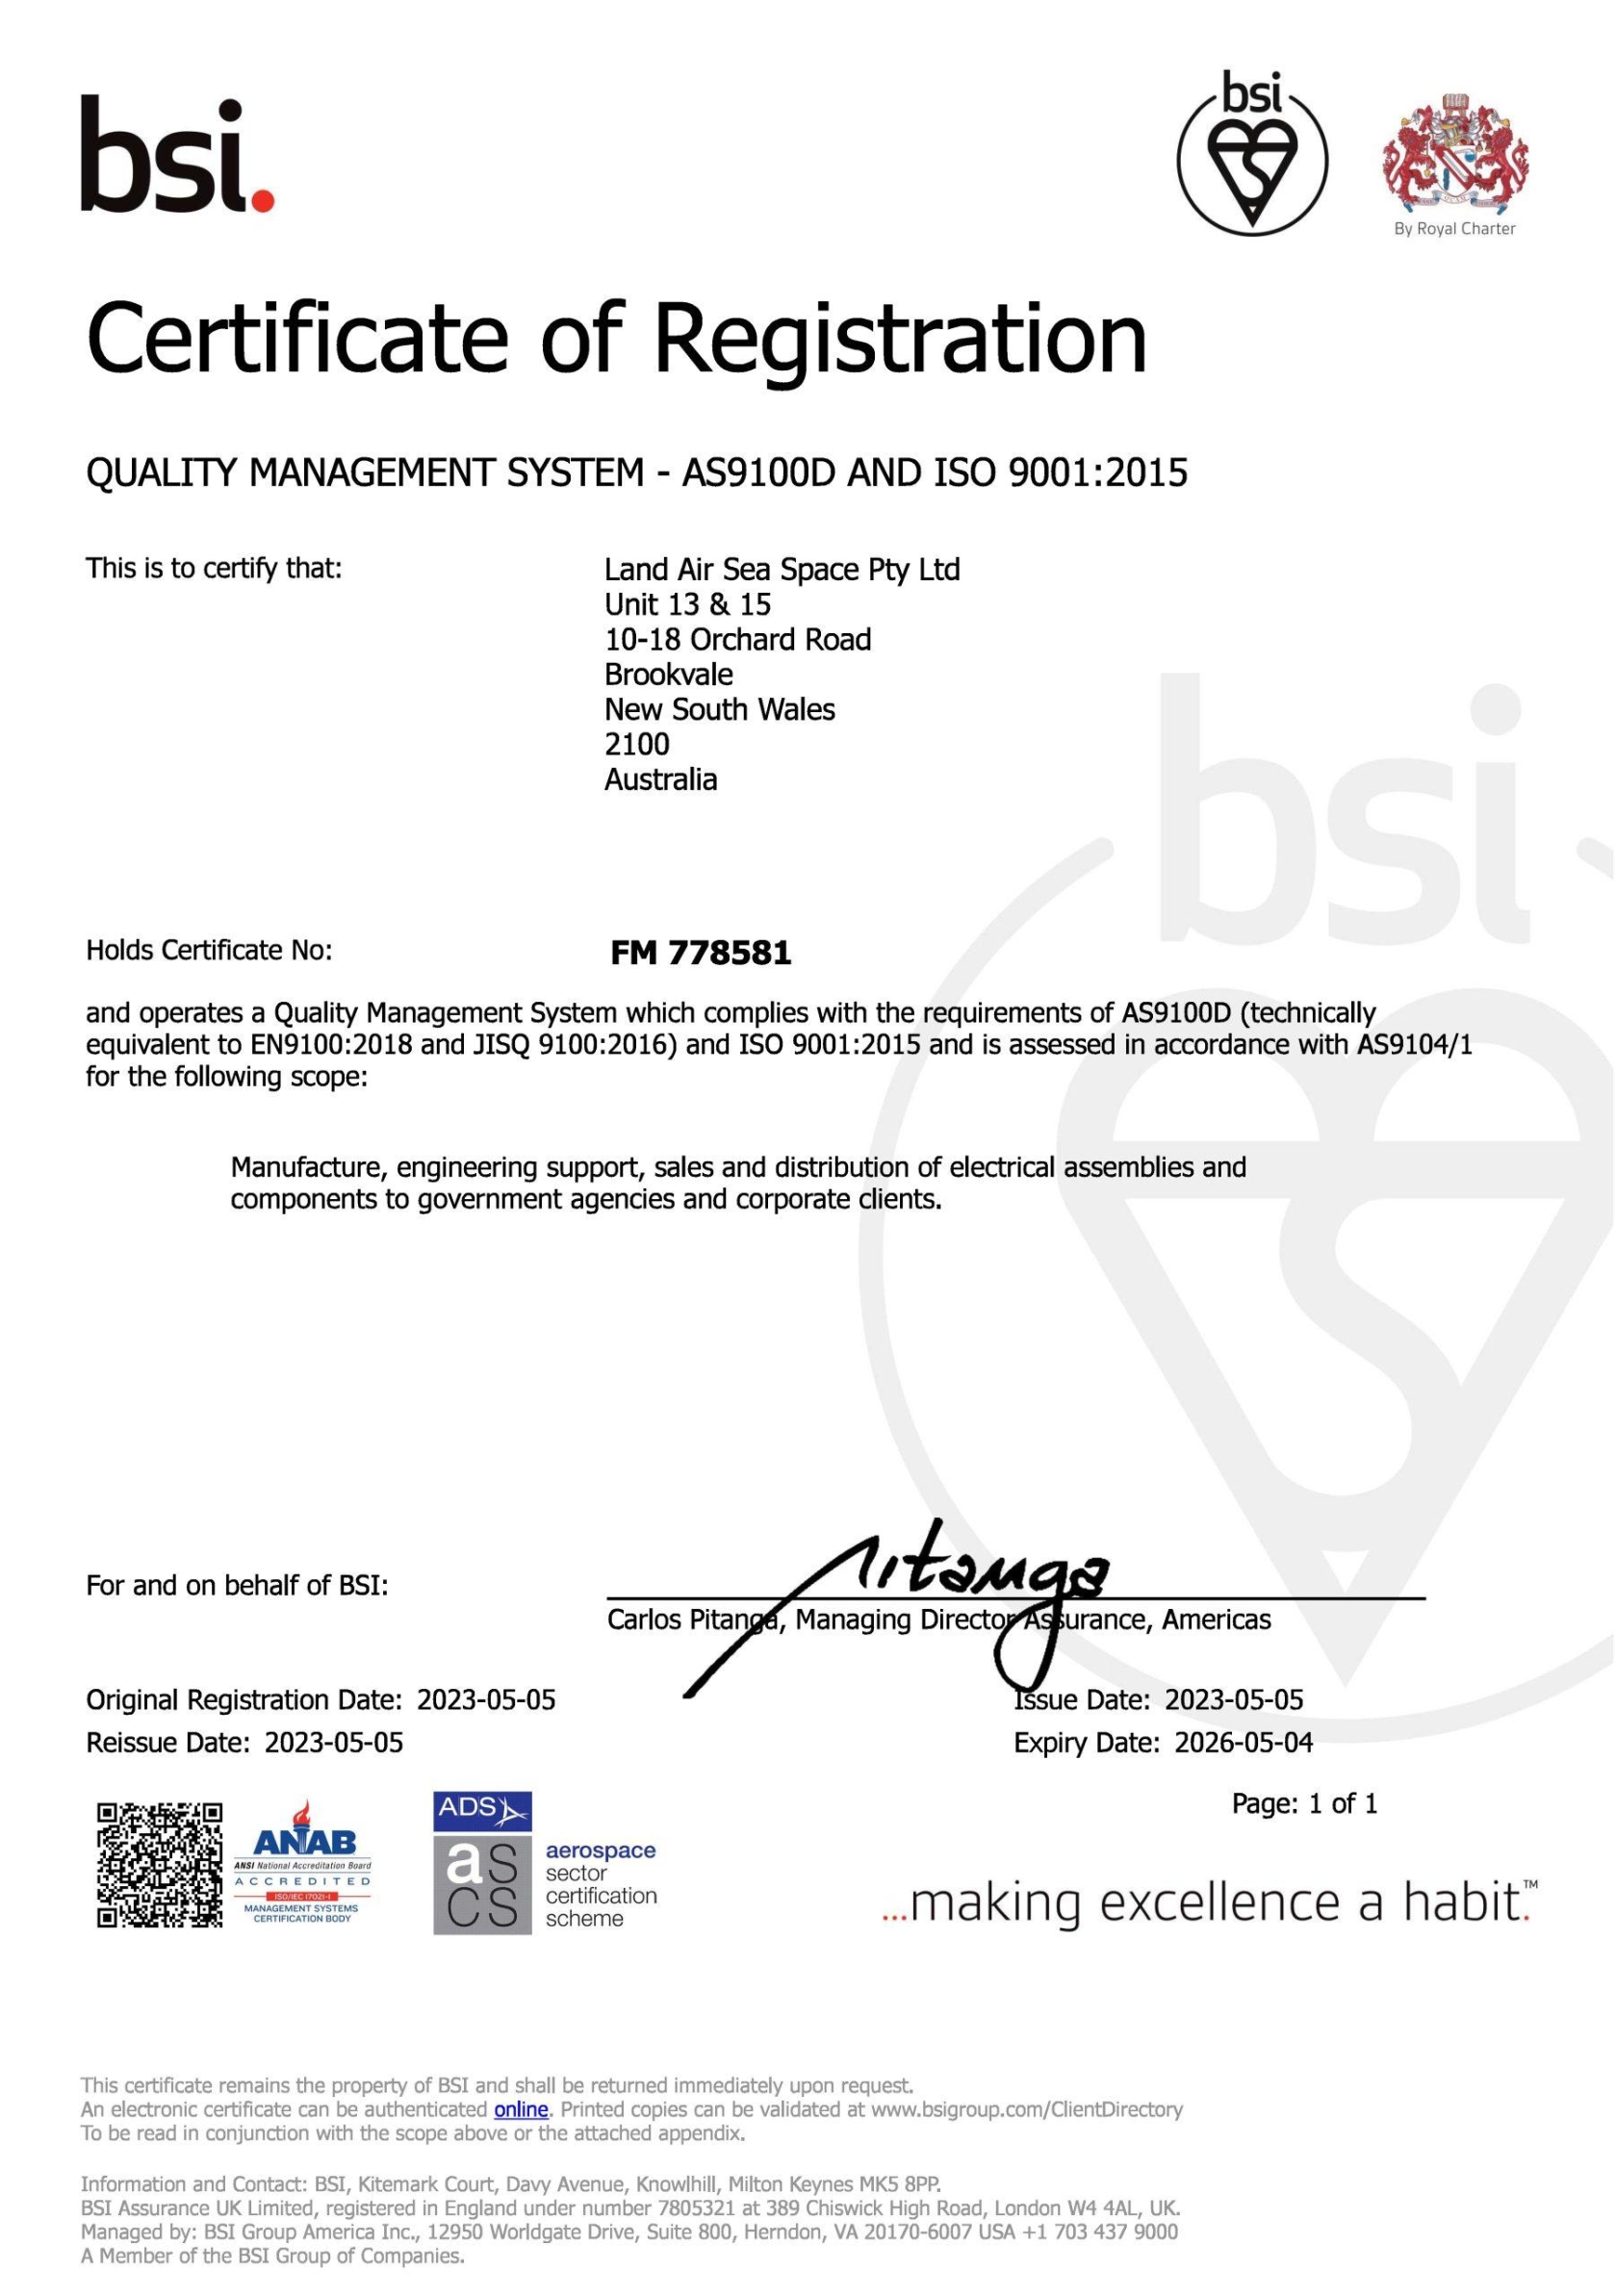 lass-as9100d-certificate-fm-778581-exp-04-05-2026